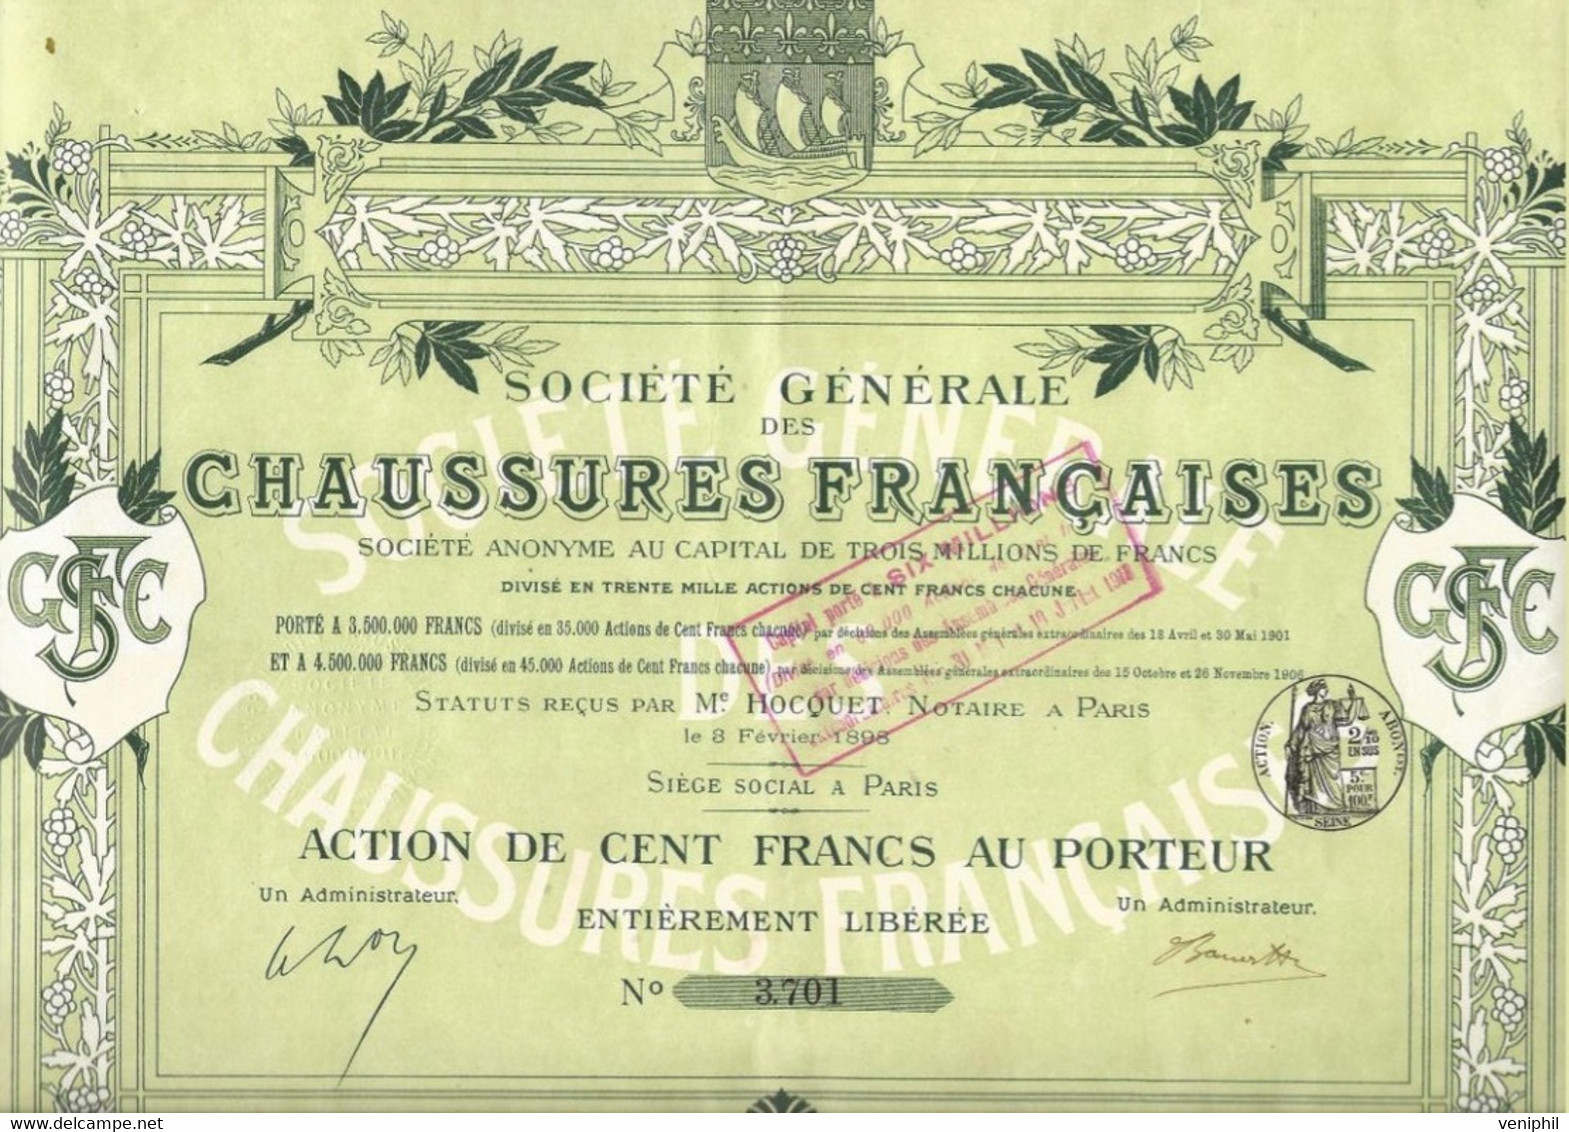 SOCIETE GENERALE DES CHAUSSURES FRANCAISES - ACTION DE CENT FRANCS - ANNEE 1898 - Textiel